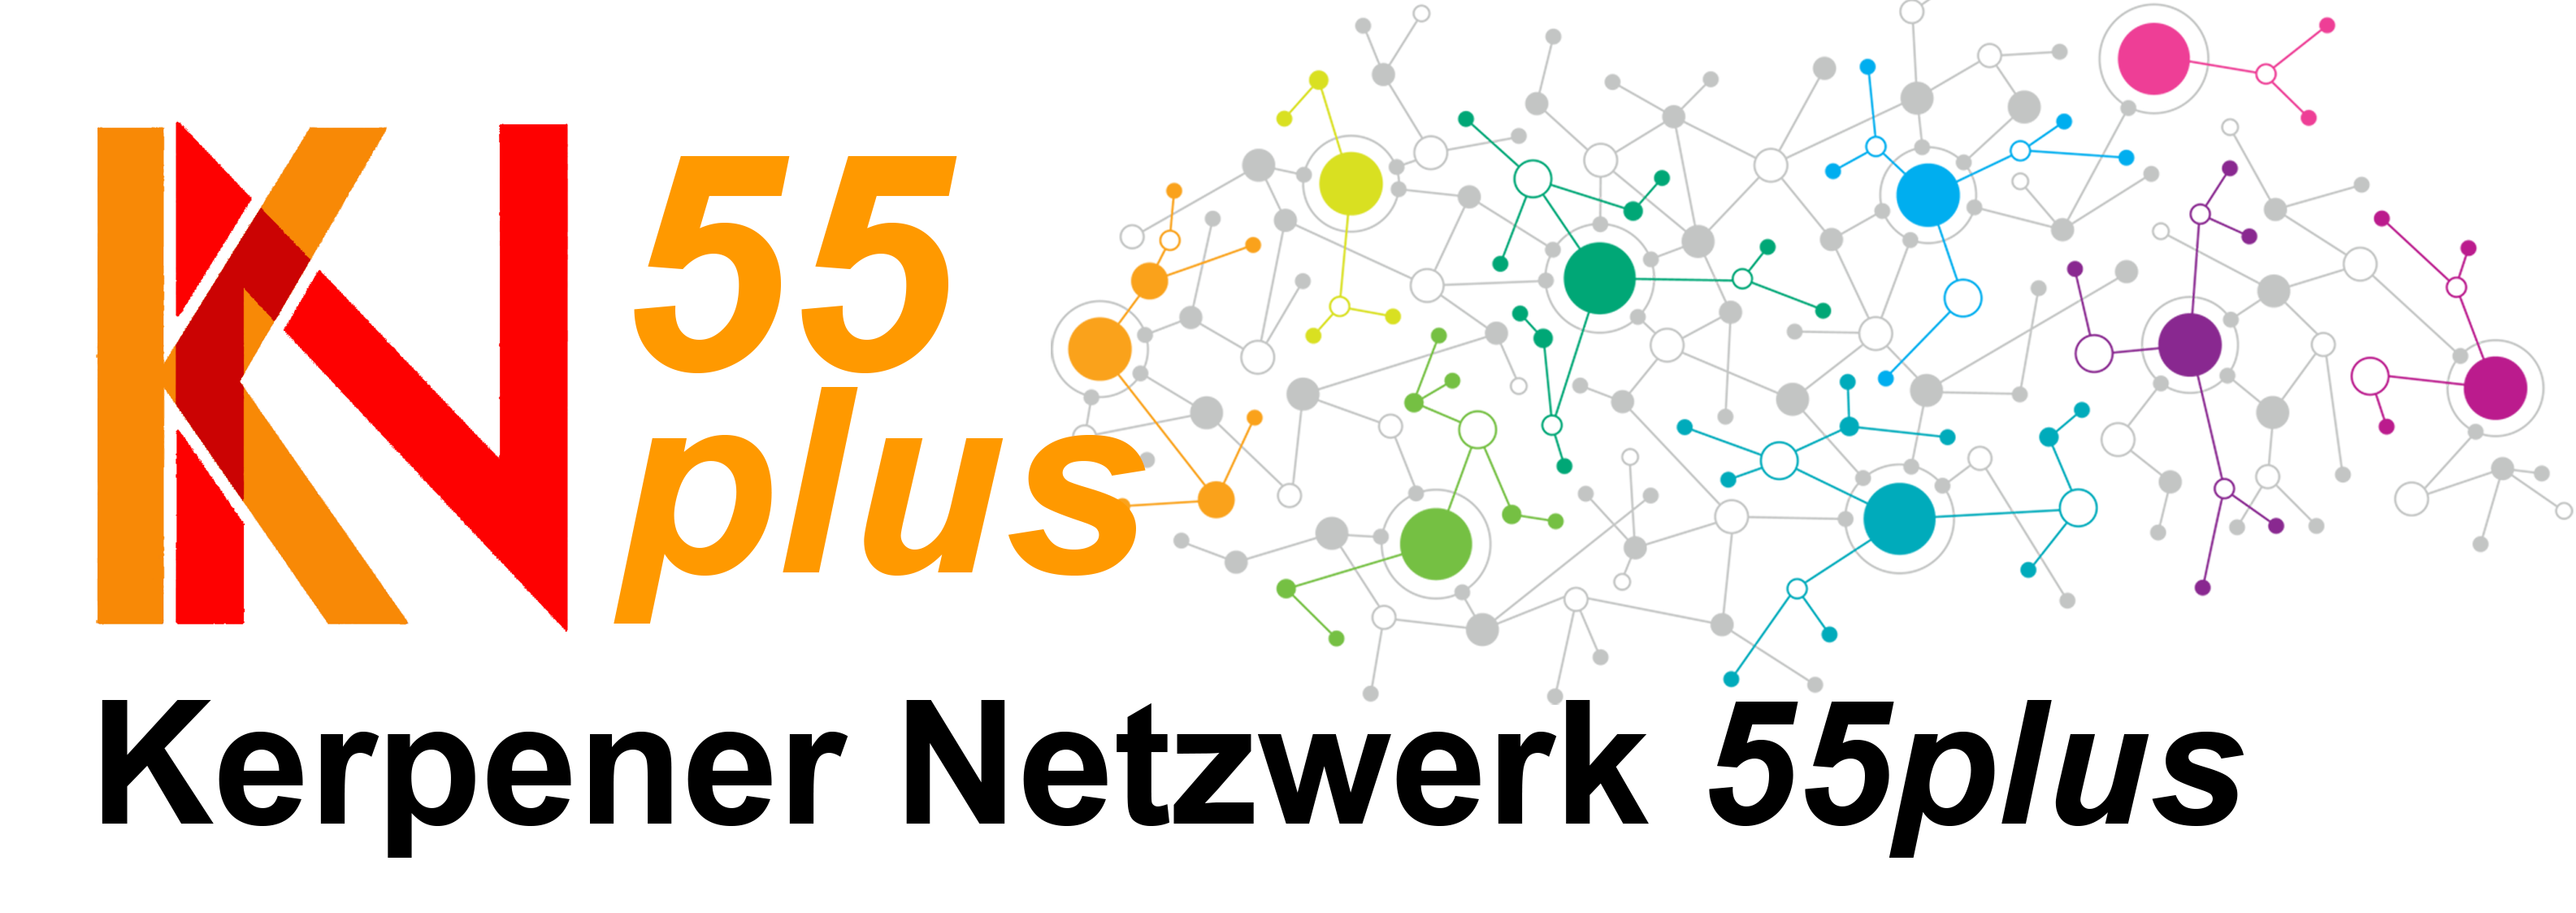 Netzwerk Kerpen 55plus